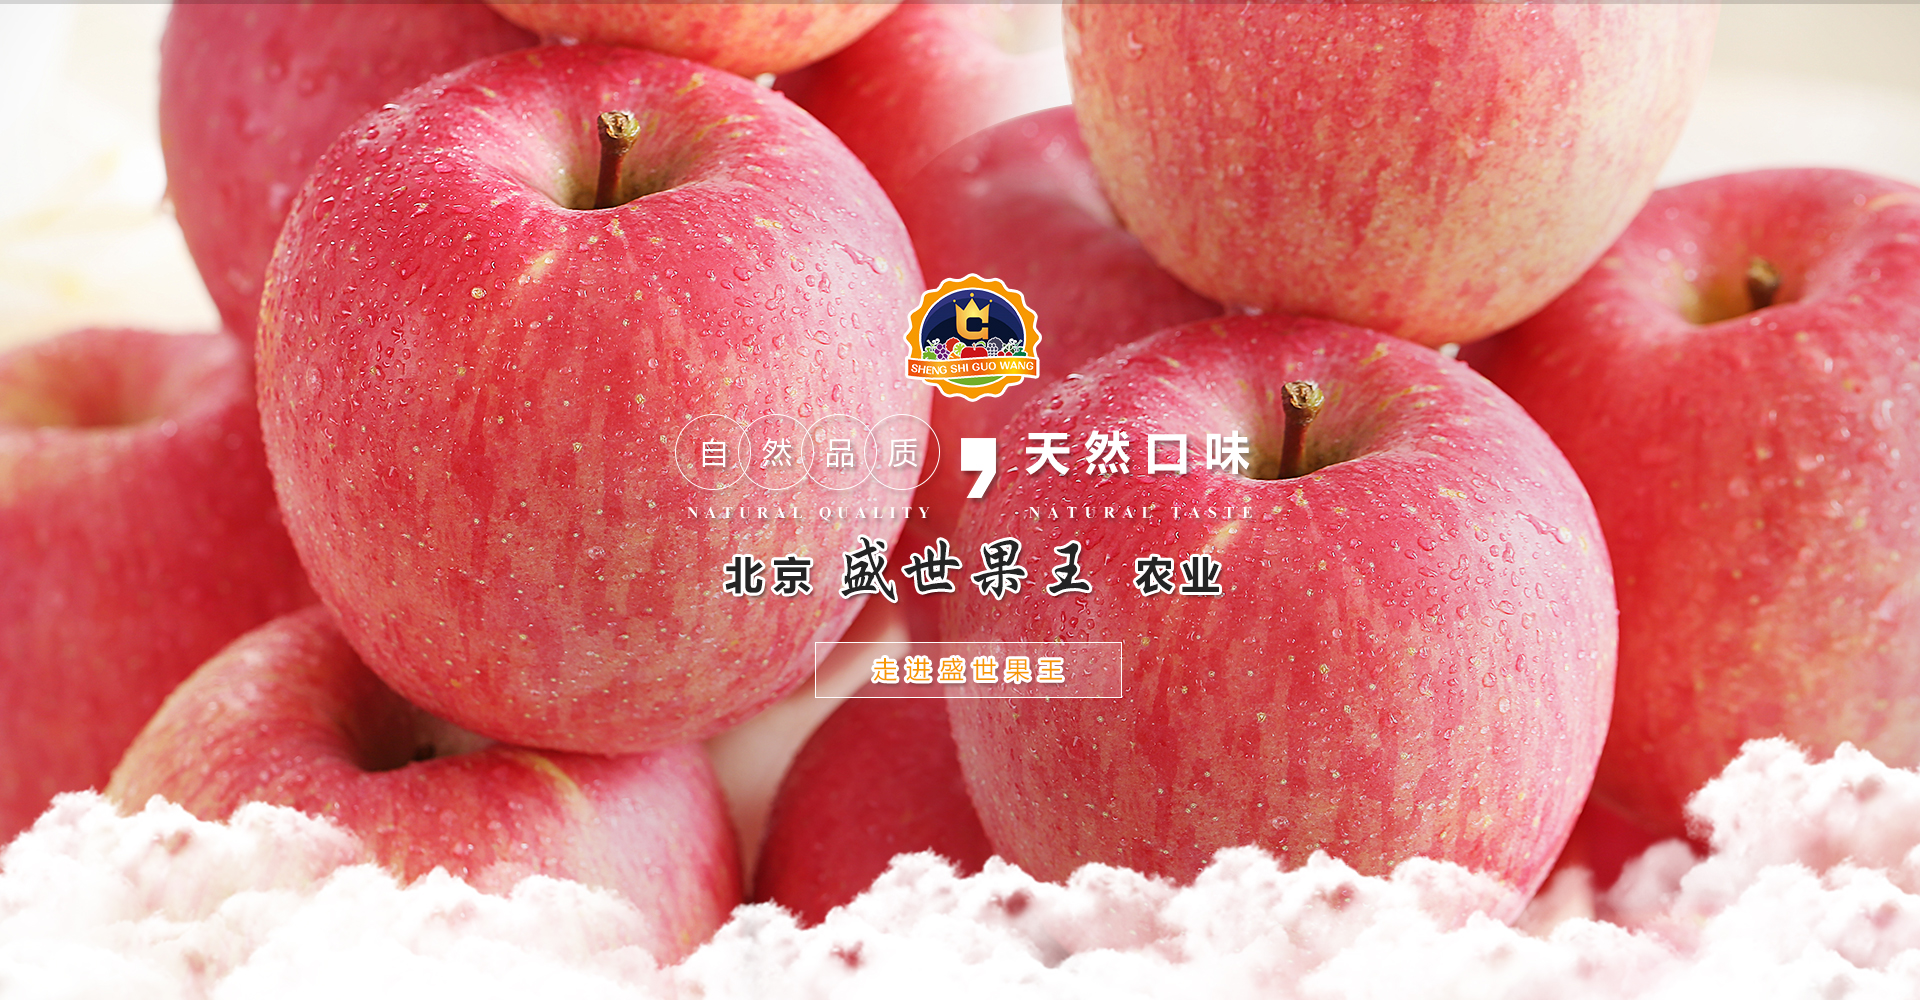 2020王林苹果批发_ 王林苹果厂家直销相关-北京盛世果王农业科技发展有限公司